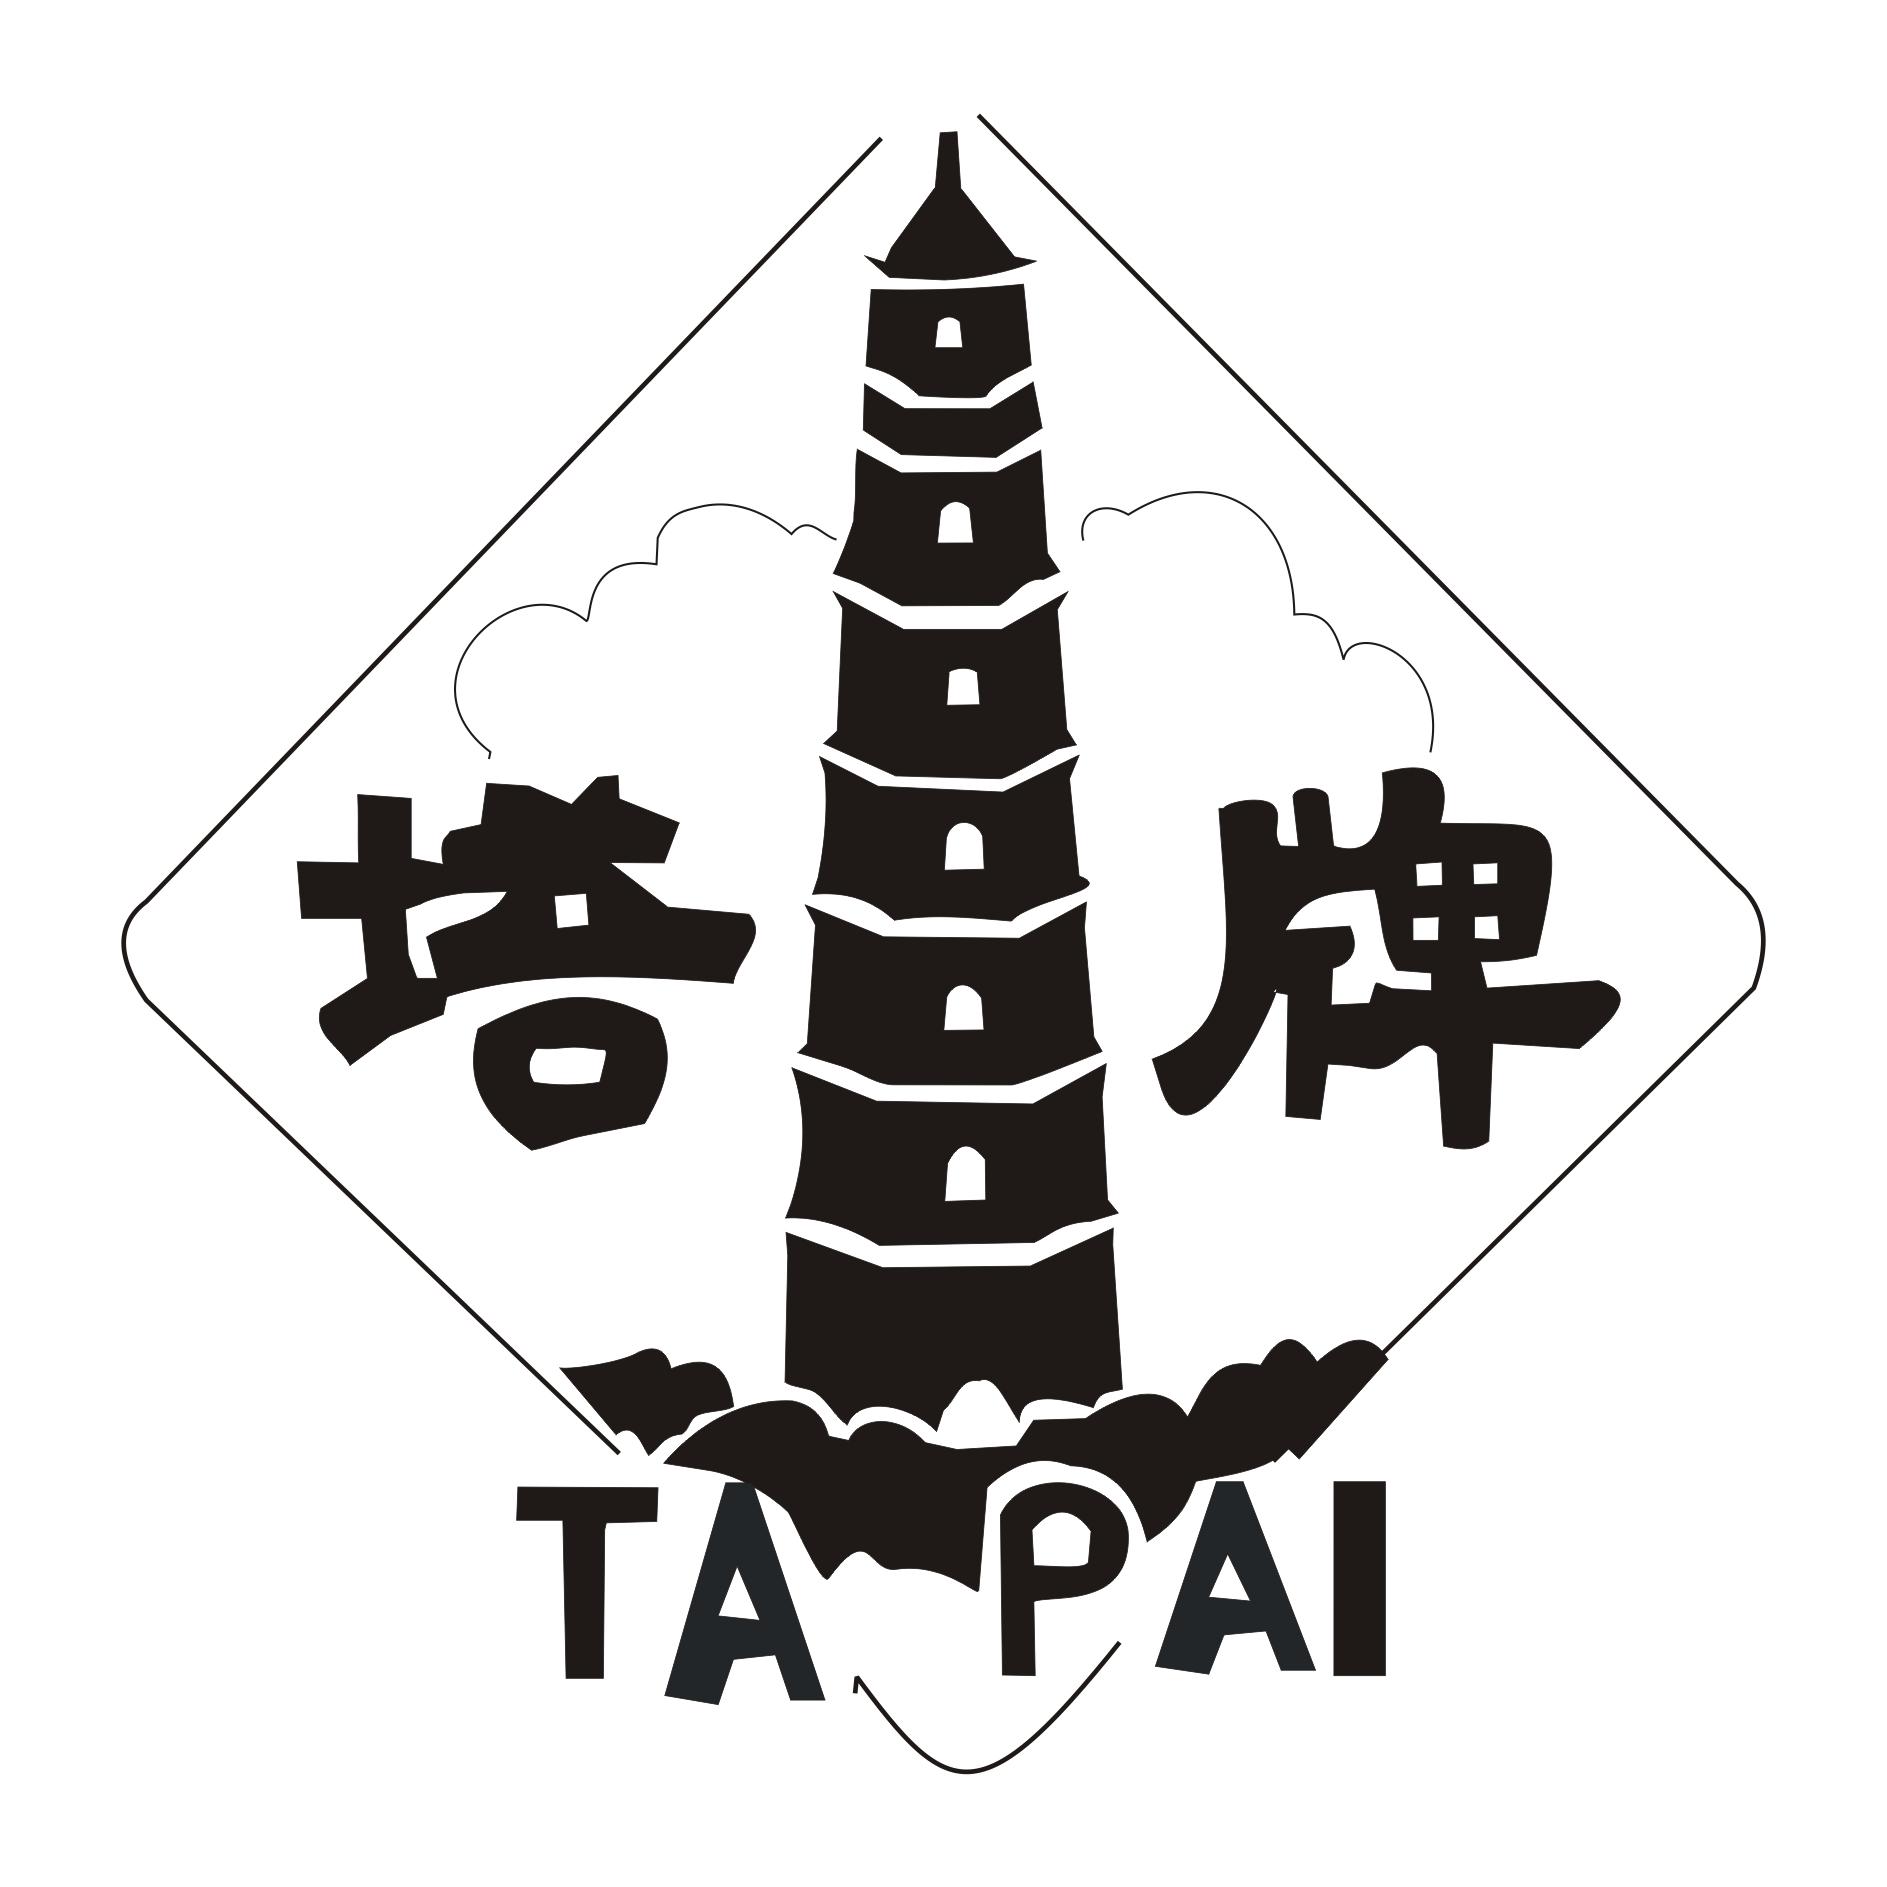 塔牌电线logo图片